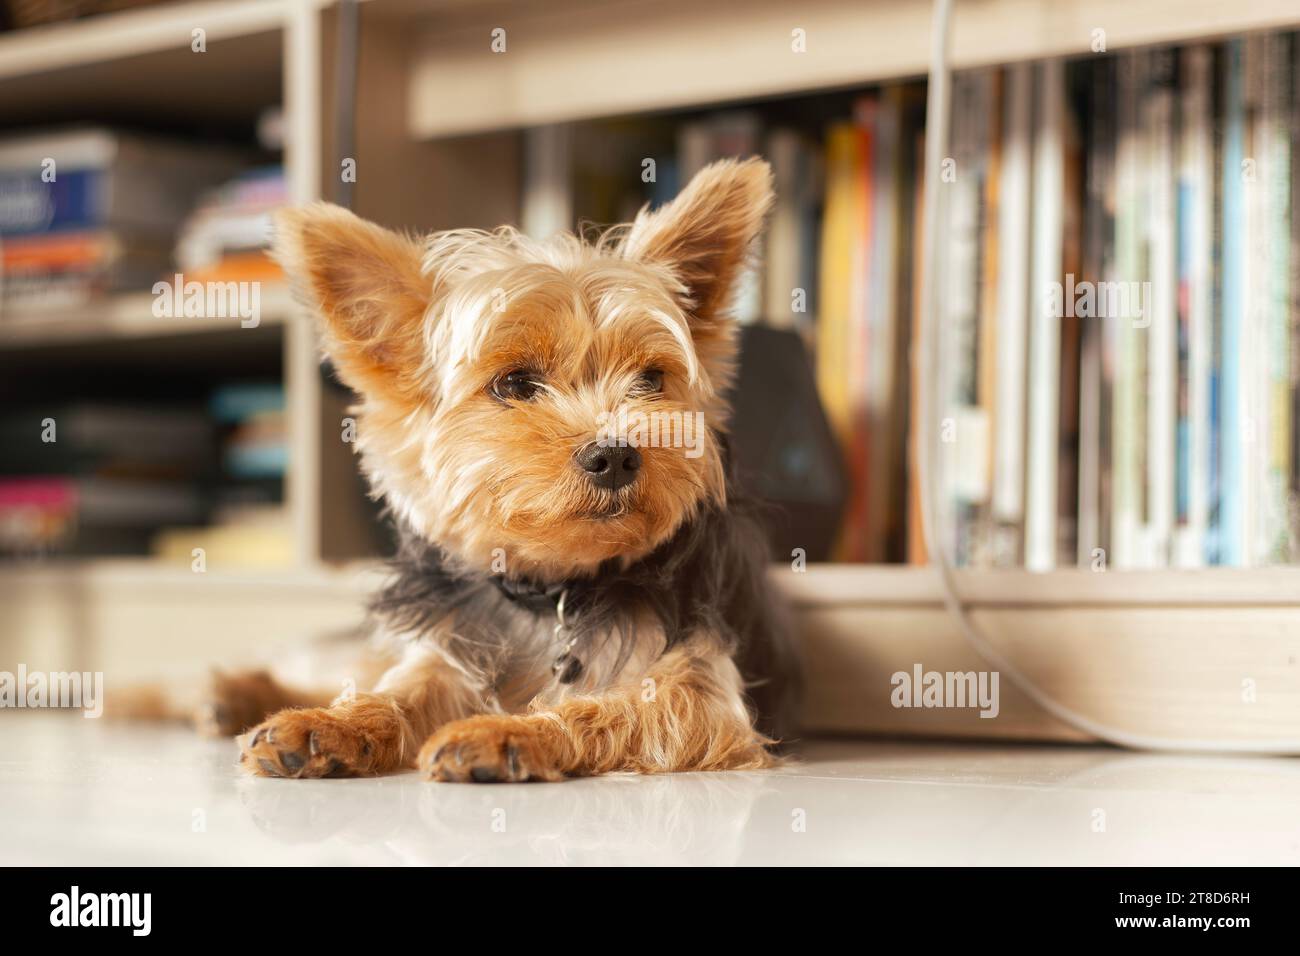 Yorkshire Terrier im Wohnzimmer und Bücherregal hinter einem Hund. Stockfoto